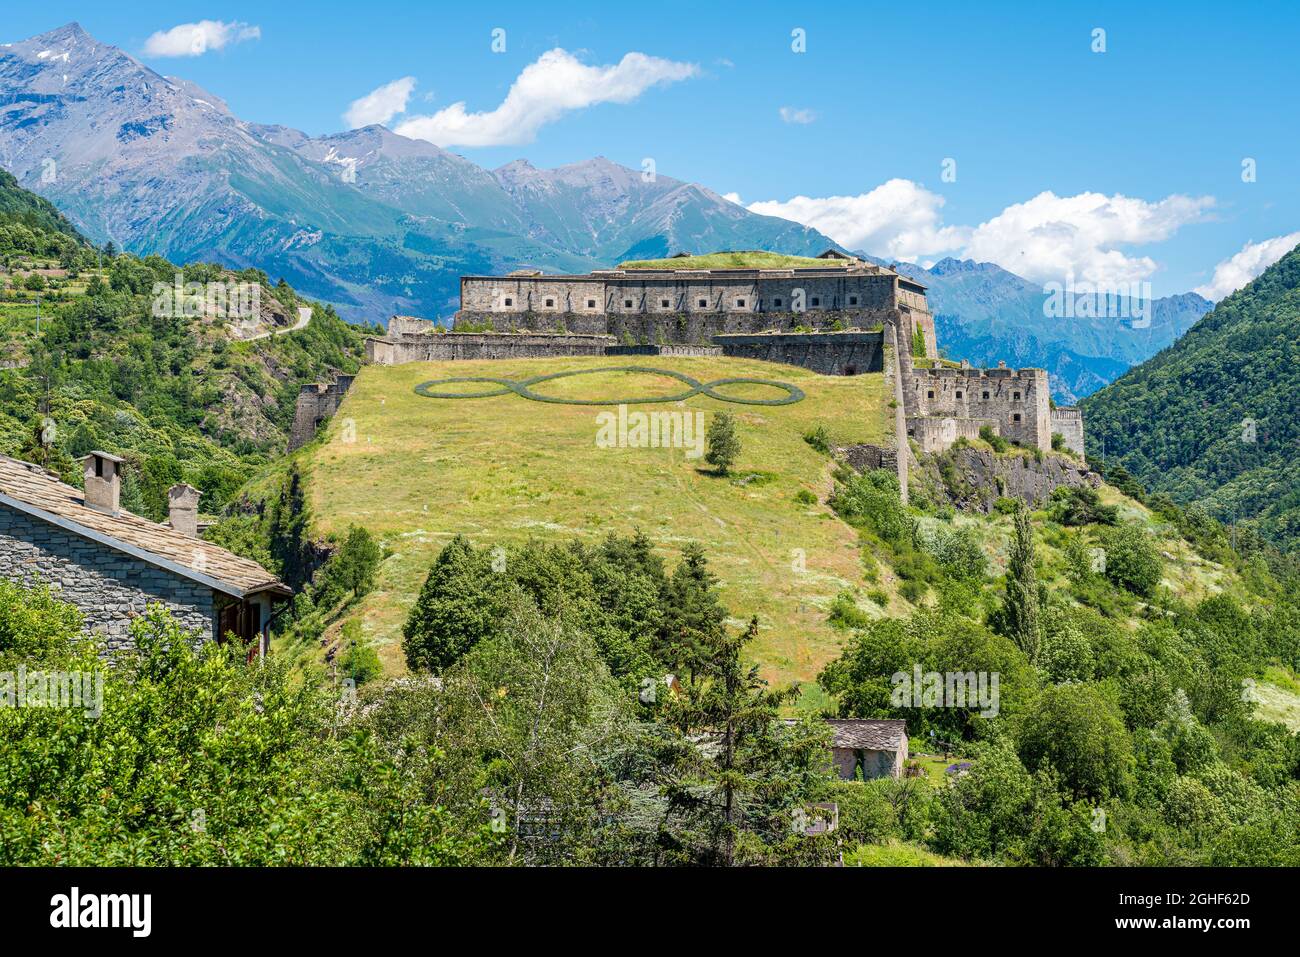 Le fort d'Exilles, dans la vallée de Susa. Province de Turin, Piémont, nord de l'Italie. Banque D'Images